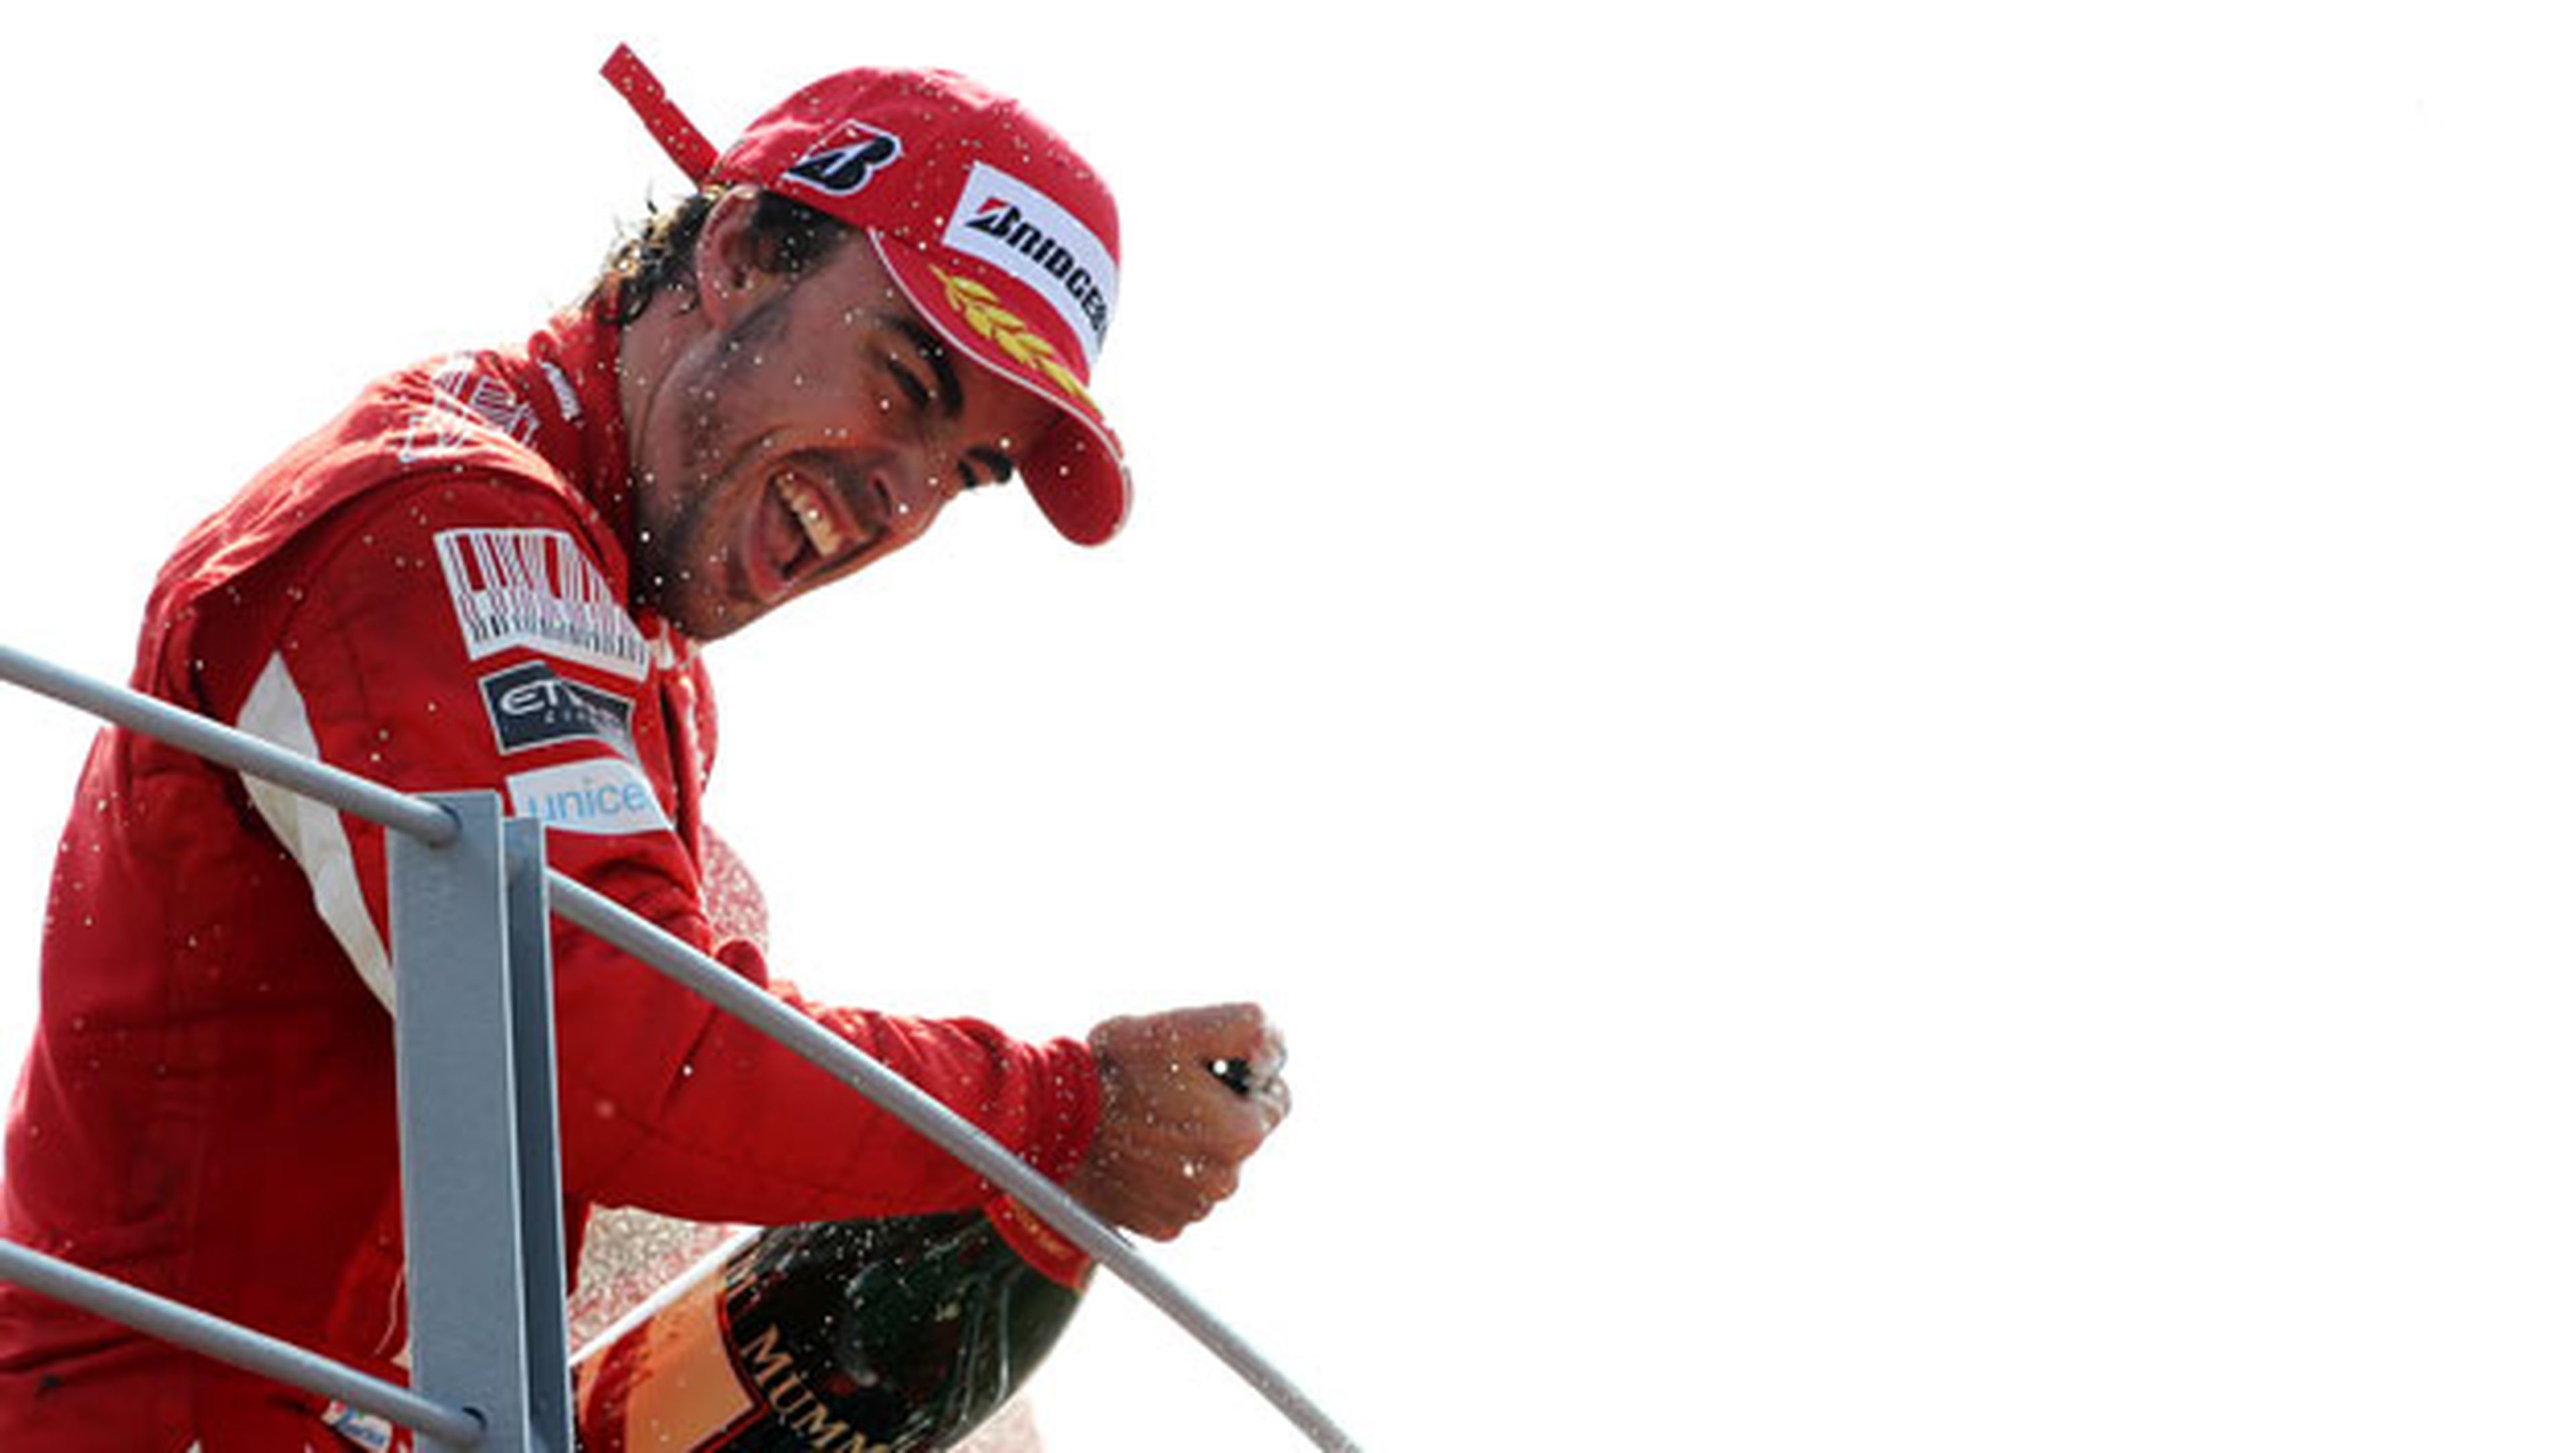 Fórmula 1: GP Italia 2010. El sueño de Alonso y Ferrari